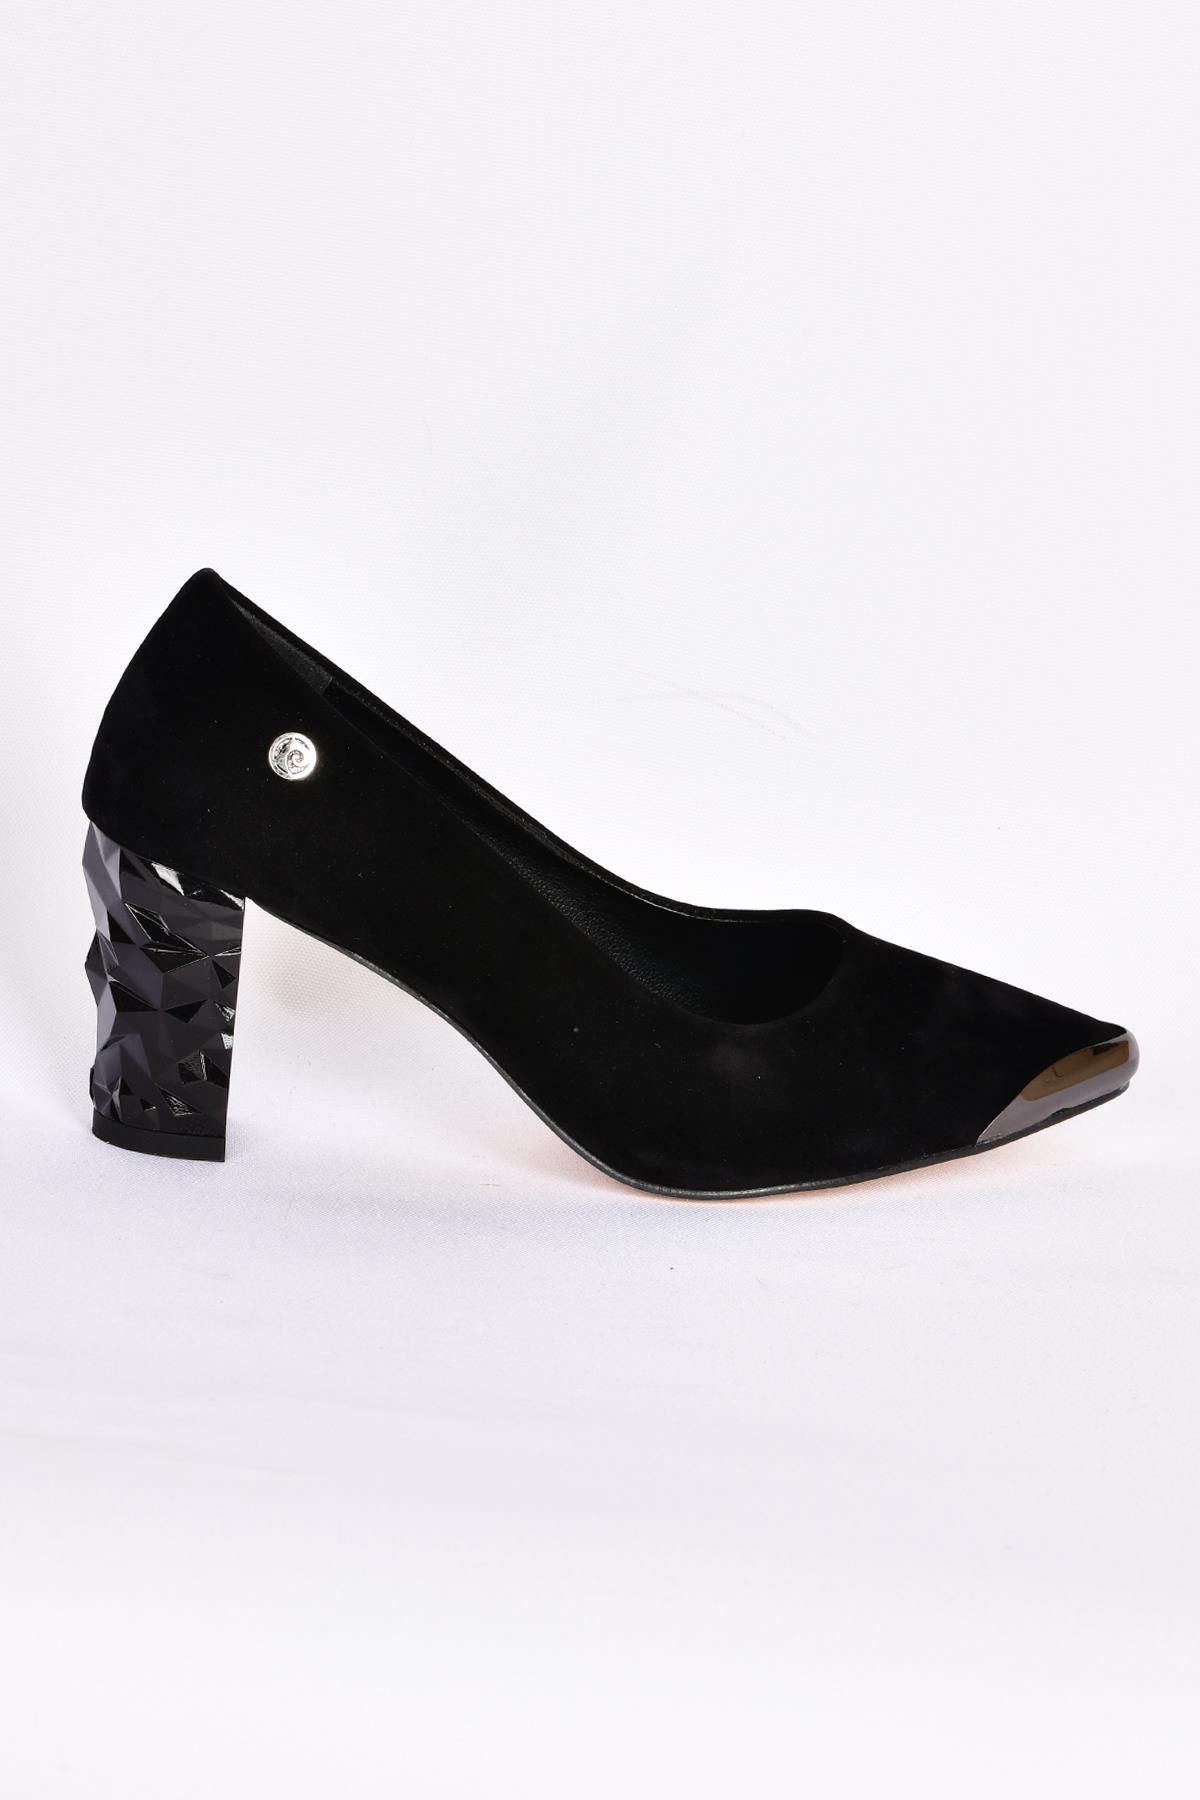 Pierre Cardin 51752 Kadın Siyah Süet Topuklu Ayakkabı